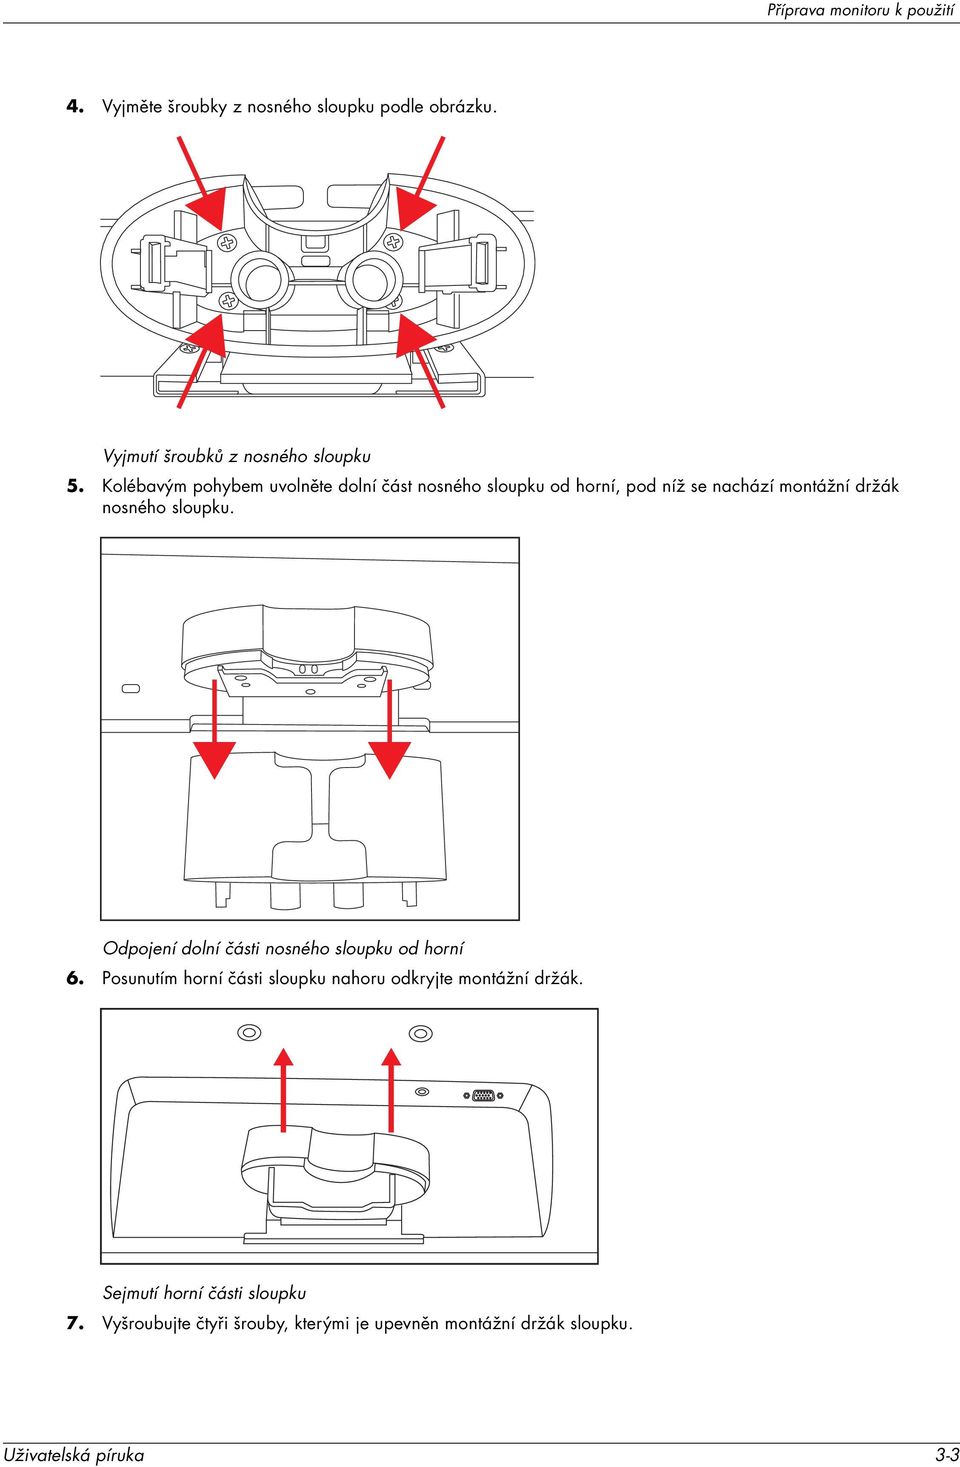 Odpojení dolní části nosného sloupku od horní 6. Posunutím horní části sloupku nahoru odkryjte montážní držák.